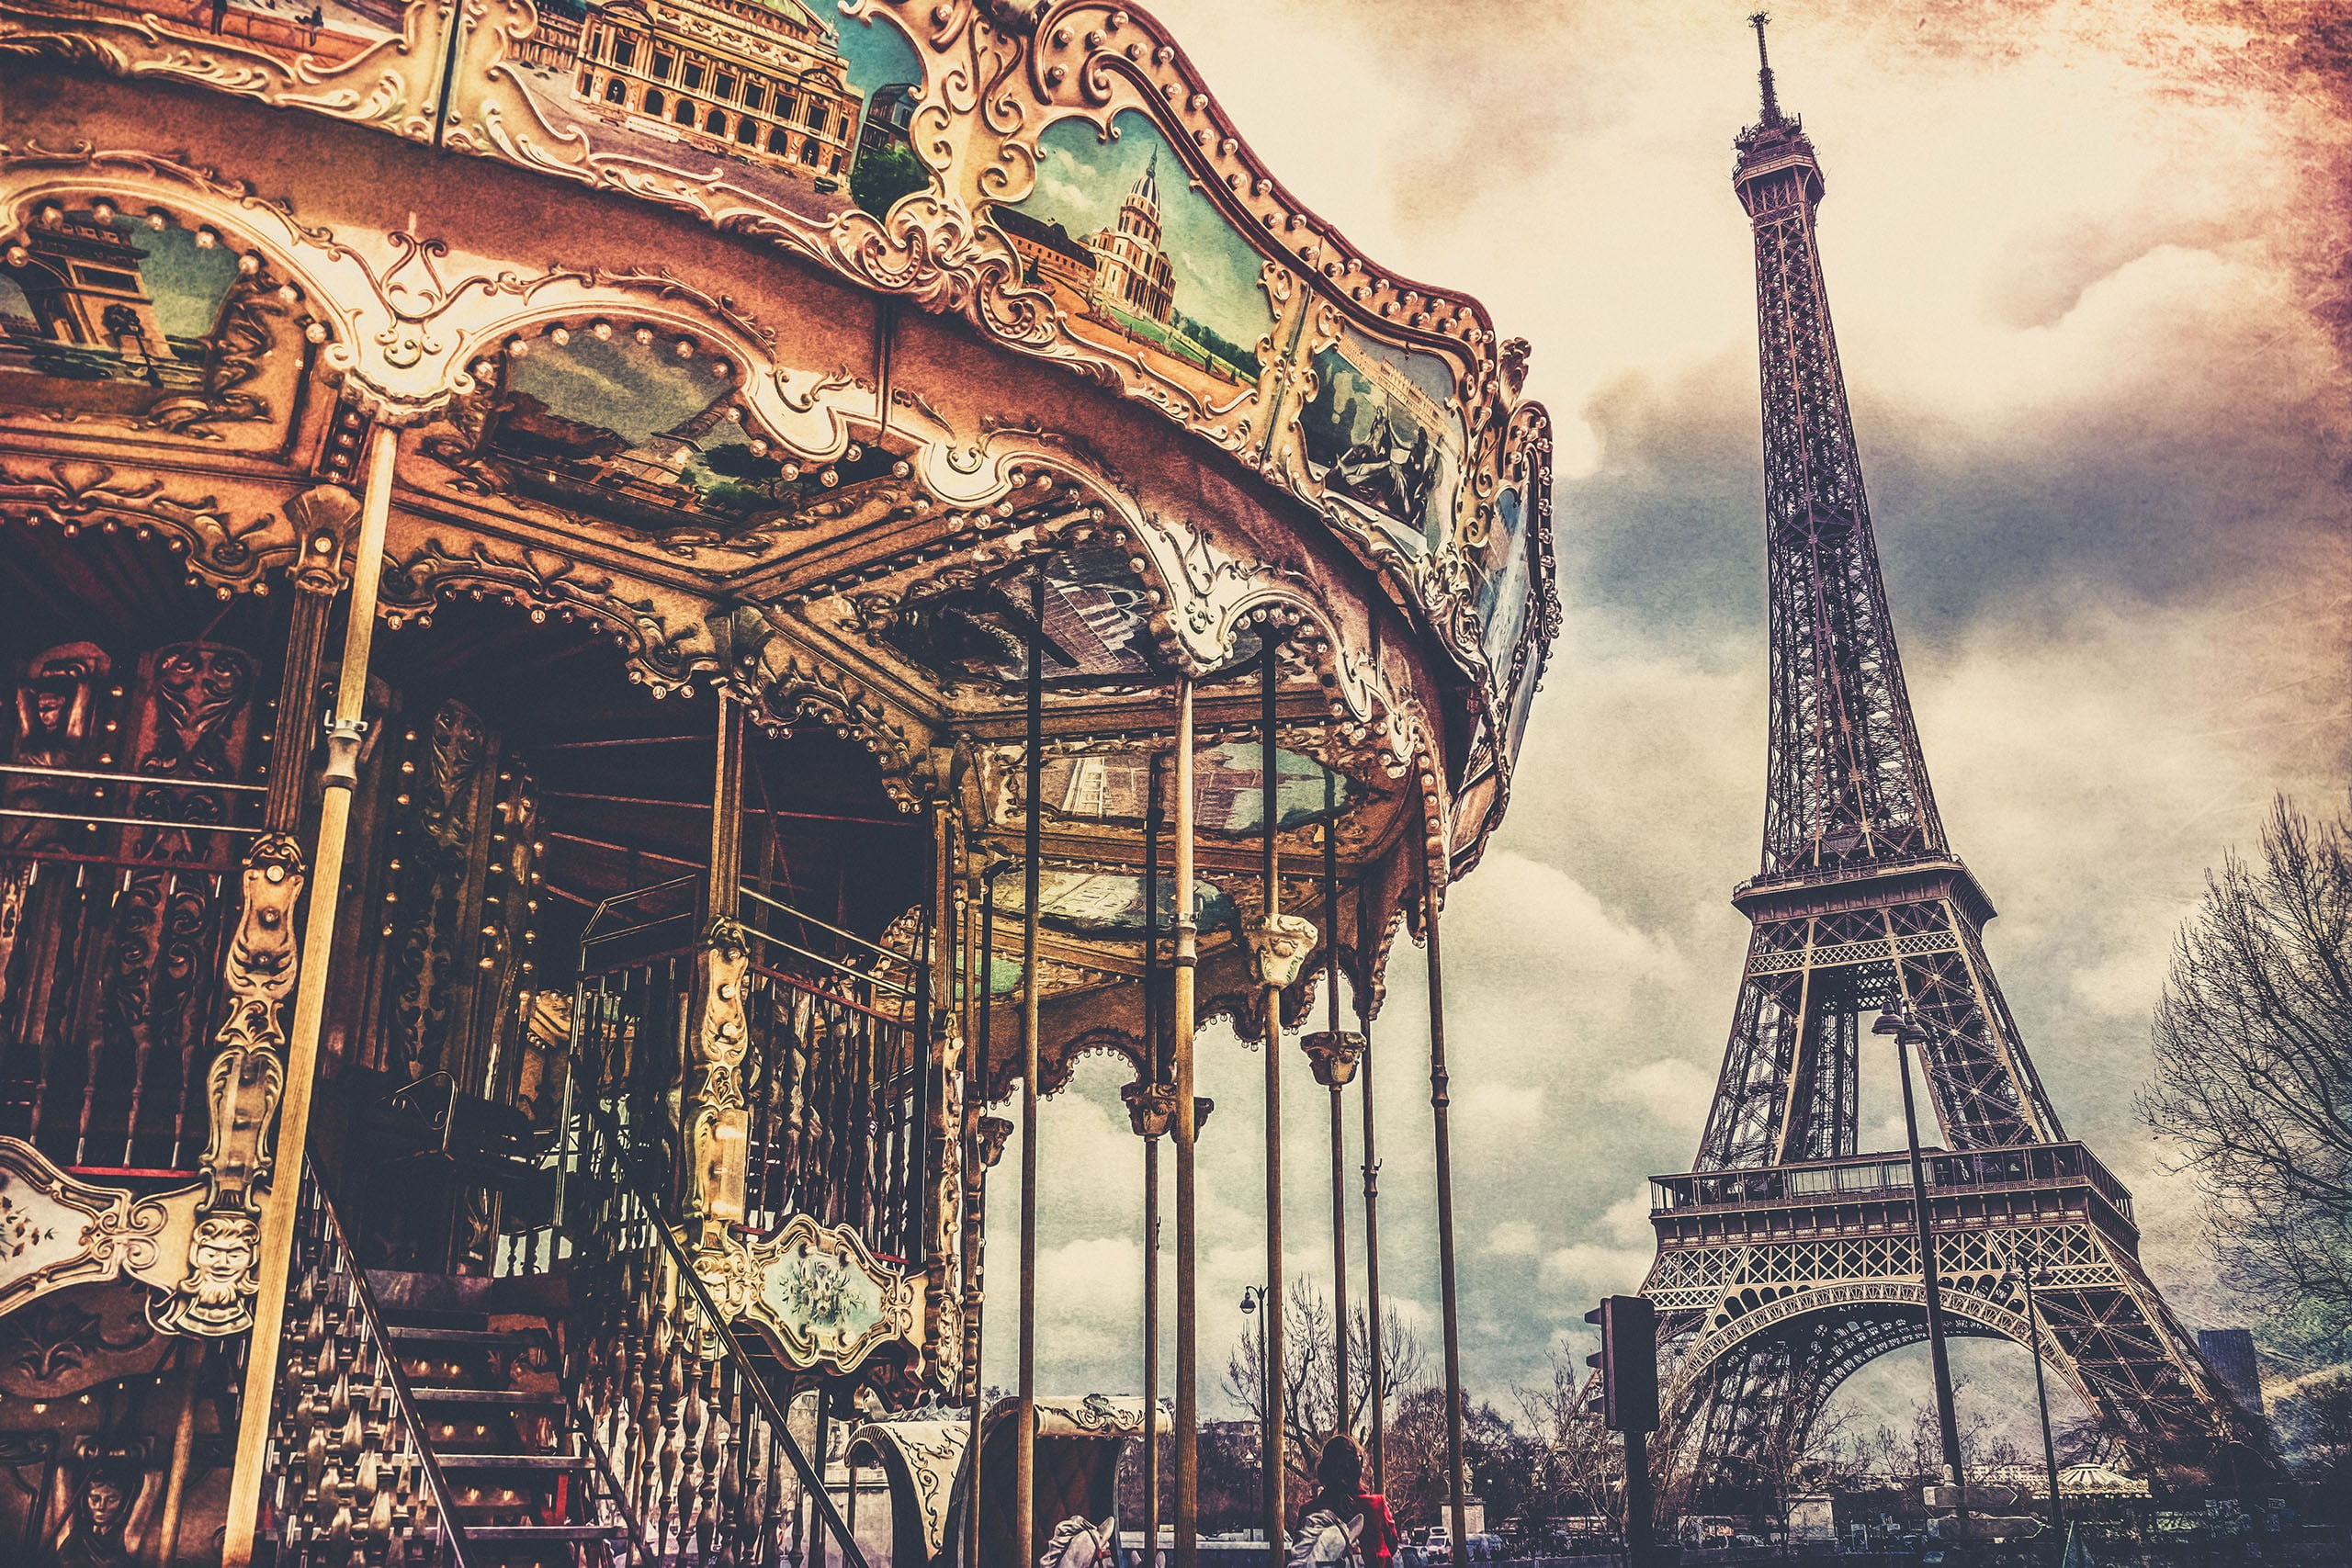 Eiffel Tower, Paris, carousel, architecture, built structure